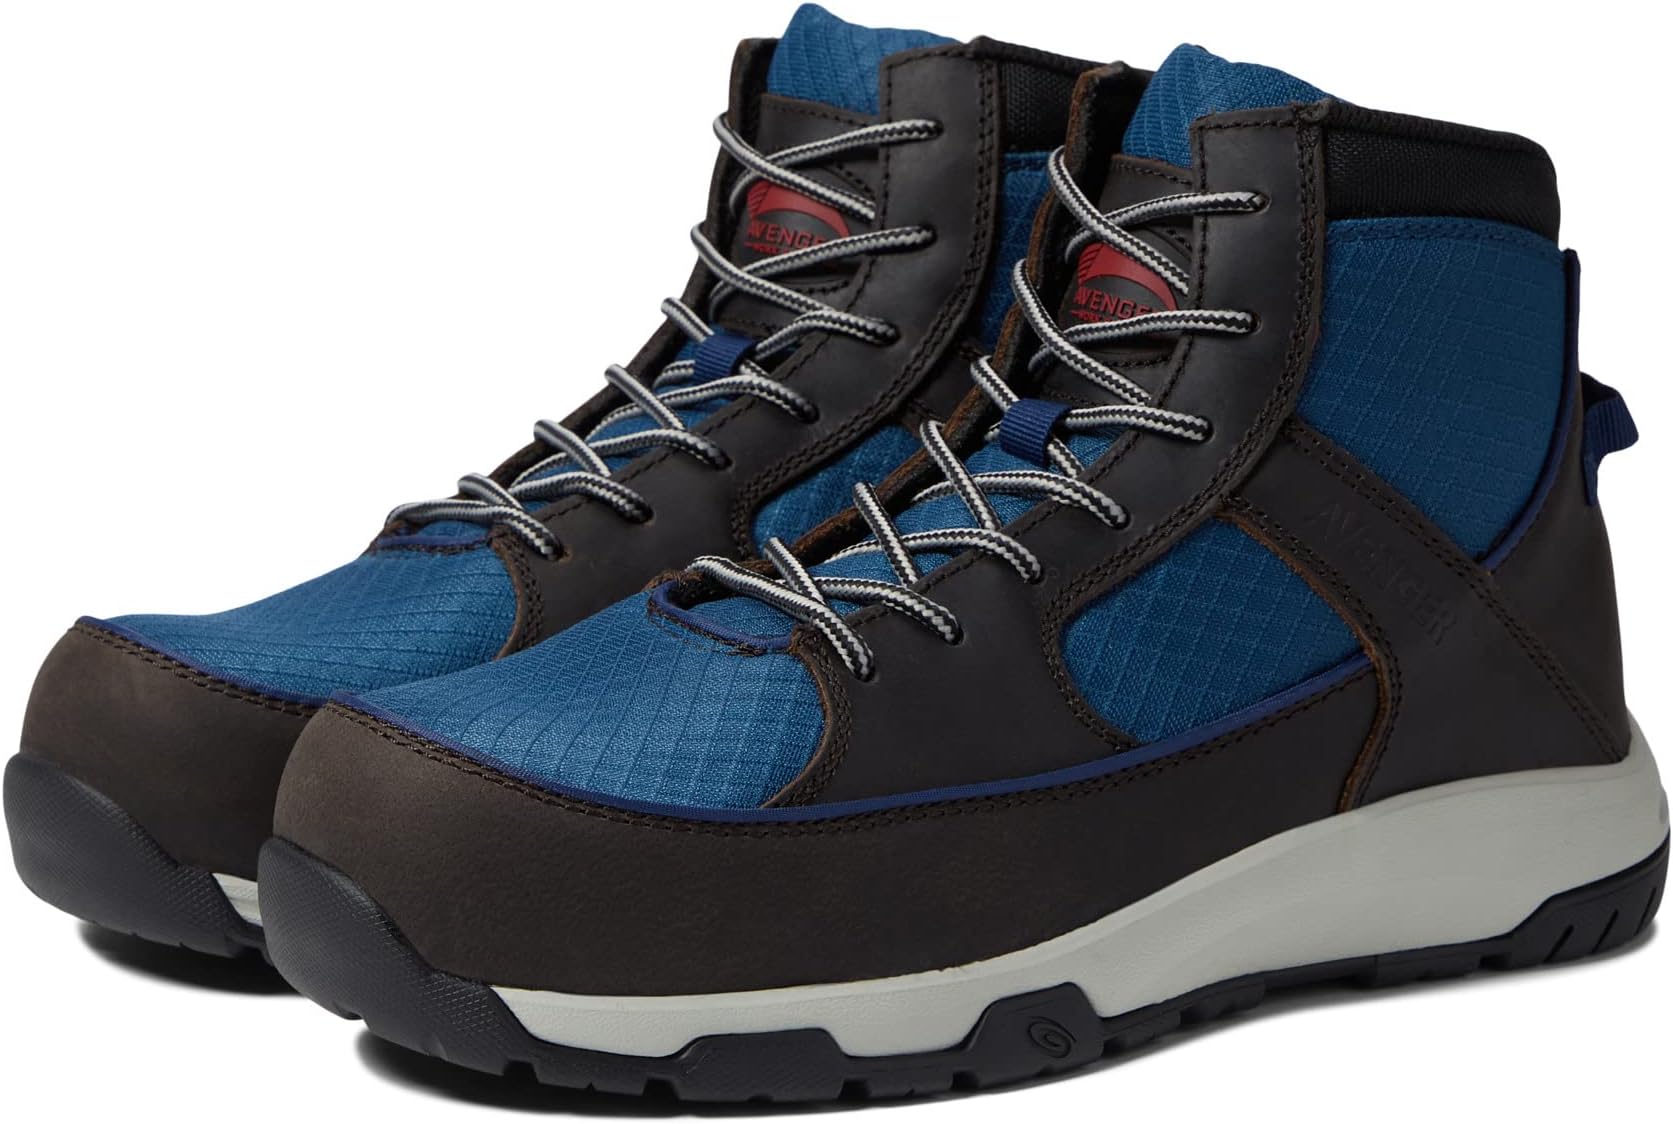 Рабочая обувь Edge CT Avenger Work Boots, цвет Grey/Blue рабочая обувь reflex avenger work boots цвет blue grey